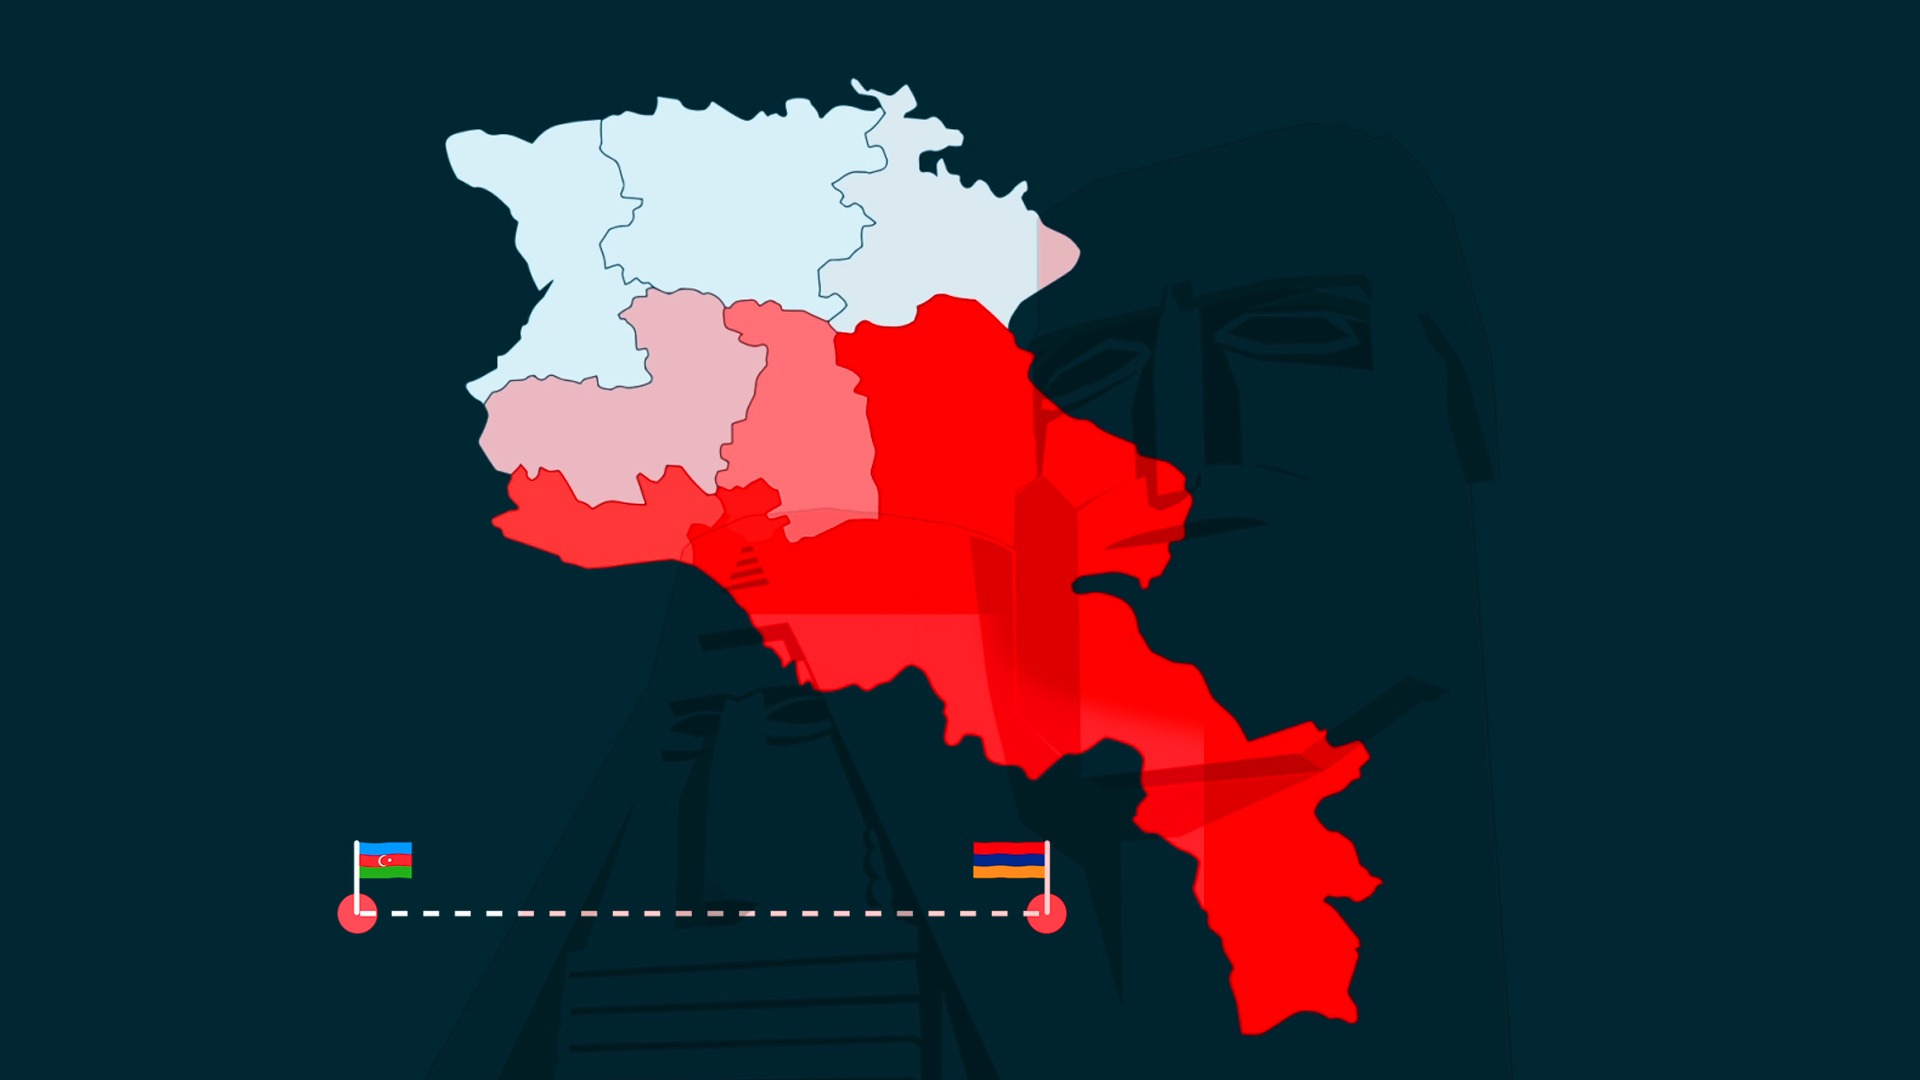 Հայաստանում հարցվածների 72 տոկոսը չի հավատում հայերի և ադրբեջանցիների համակեցությանը